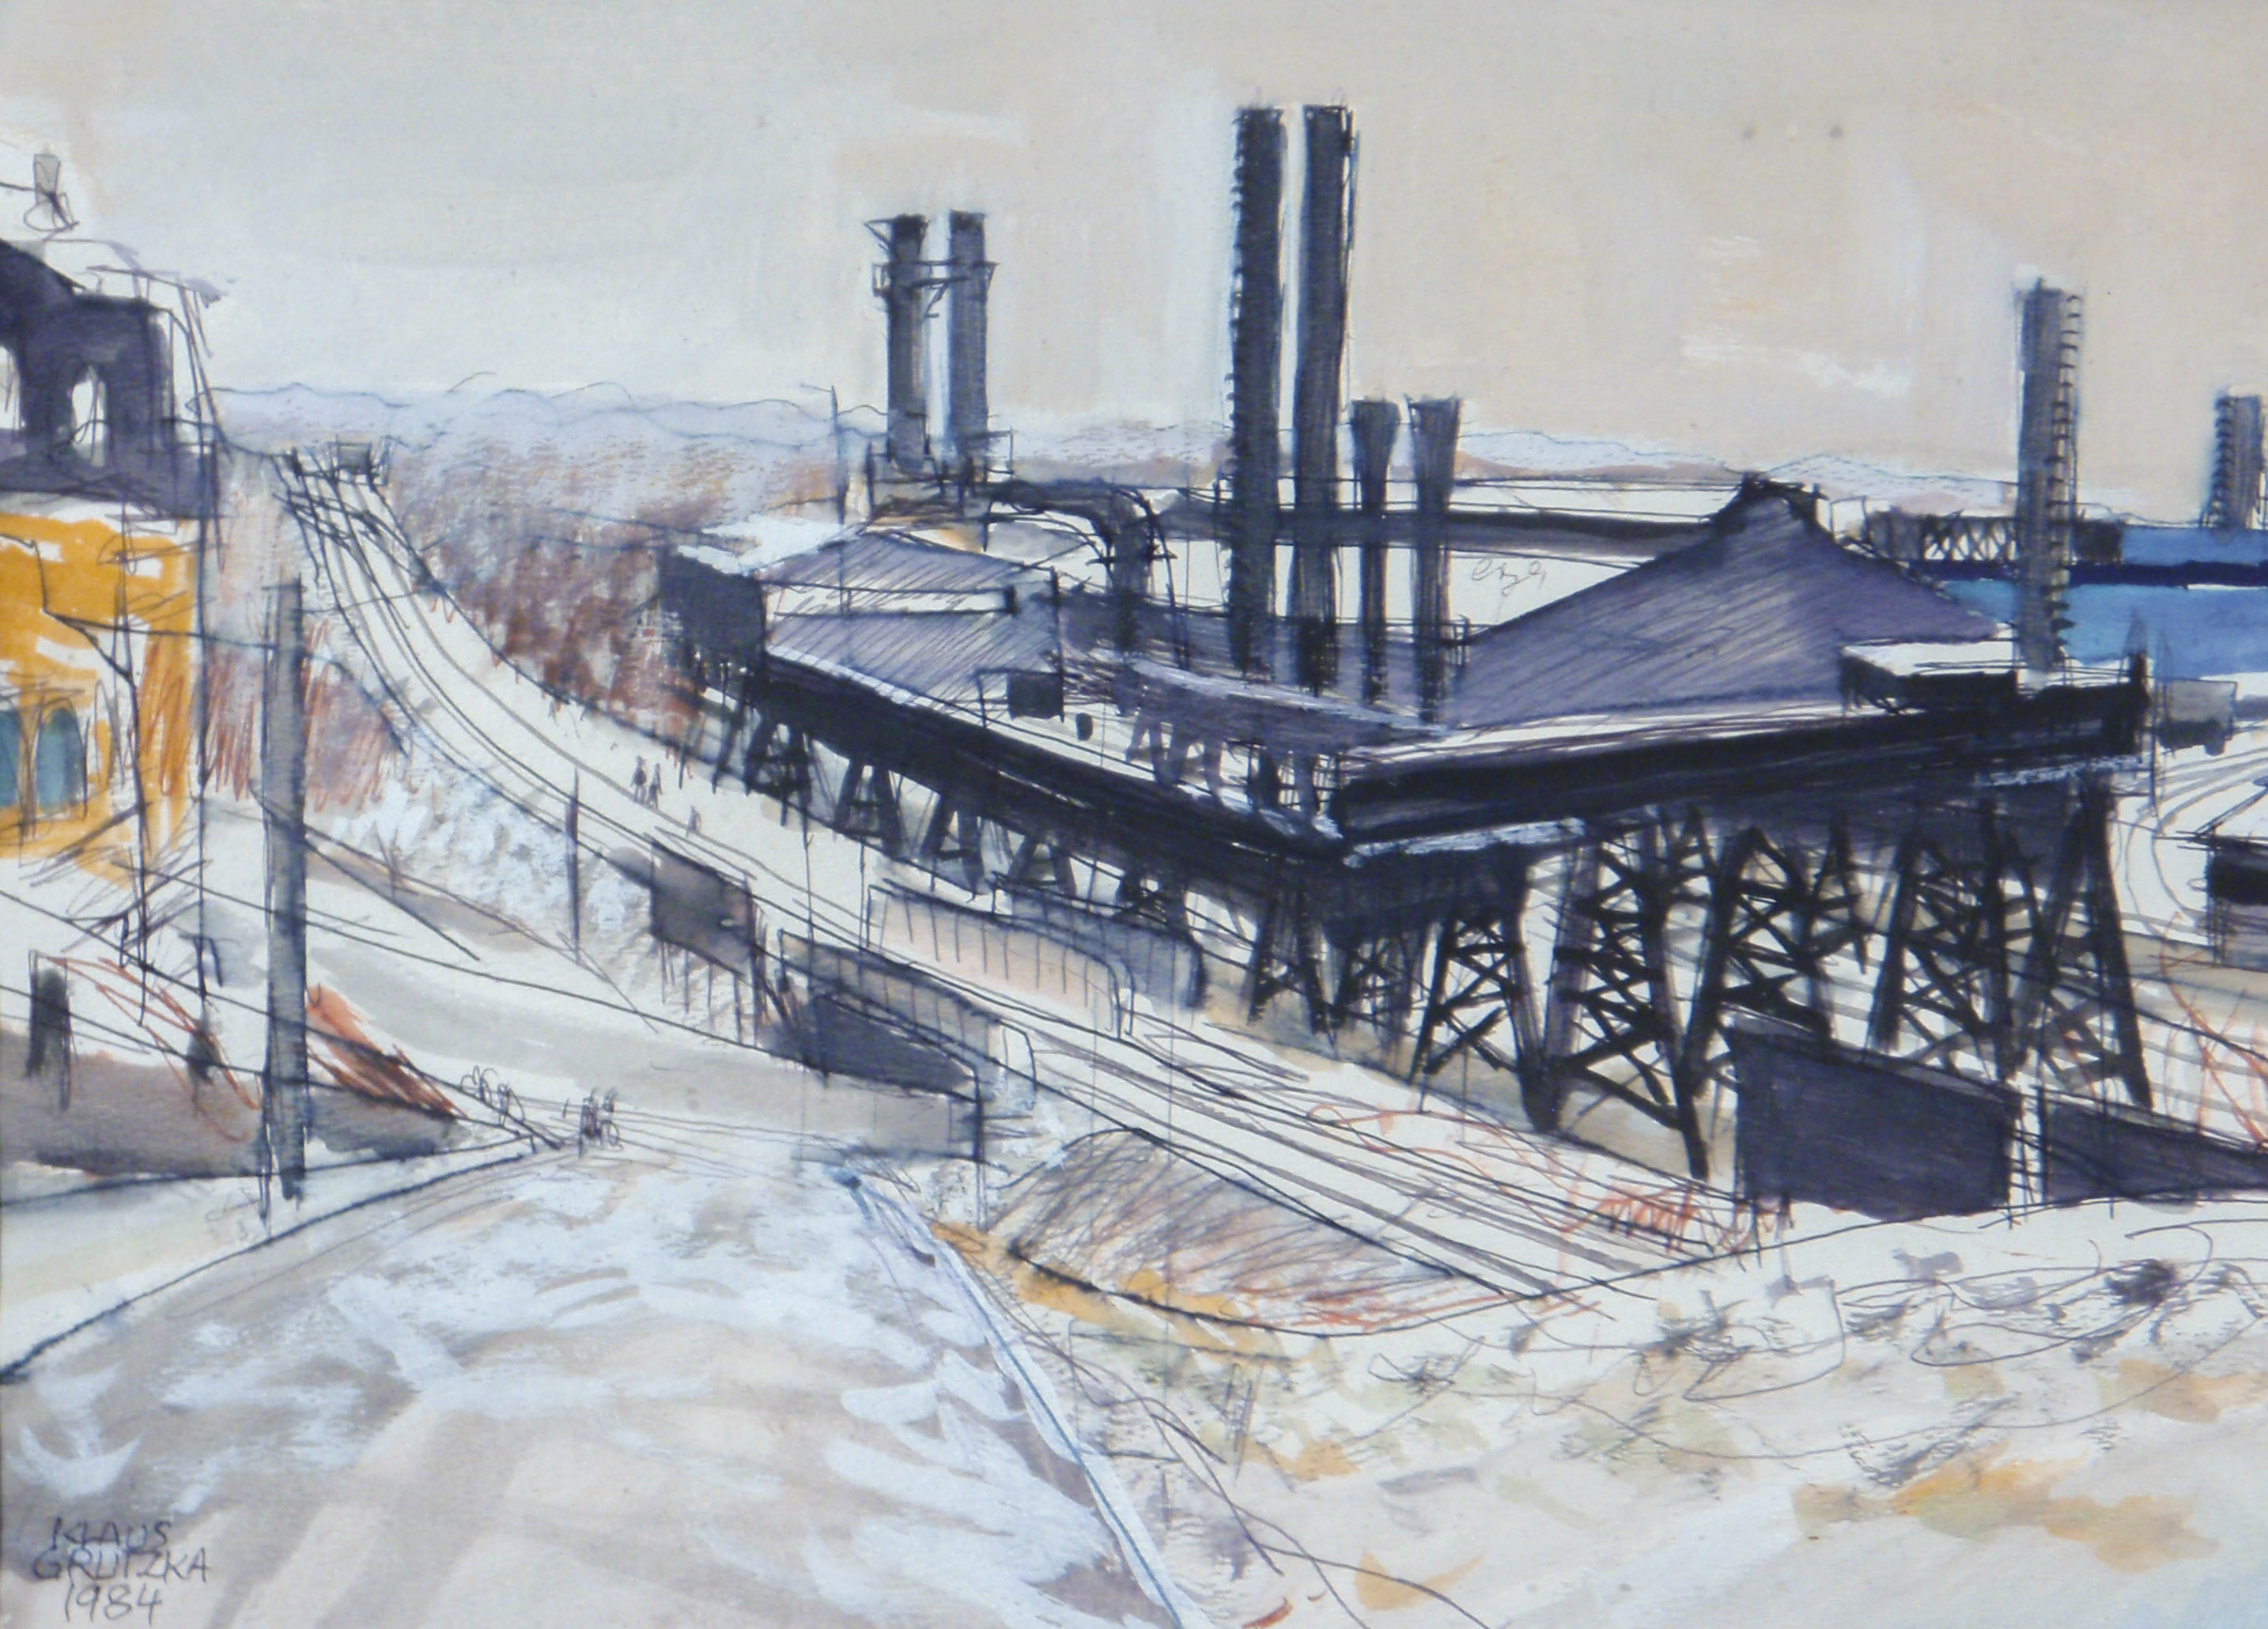 Phoenix Steel, Vanderslice Street, Phoenixville, PA, Mill buildings, 1984 - Image #510